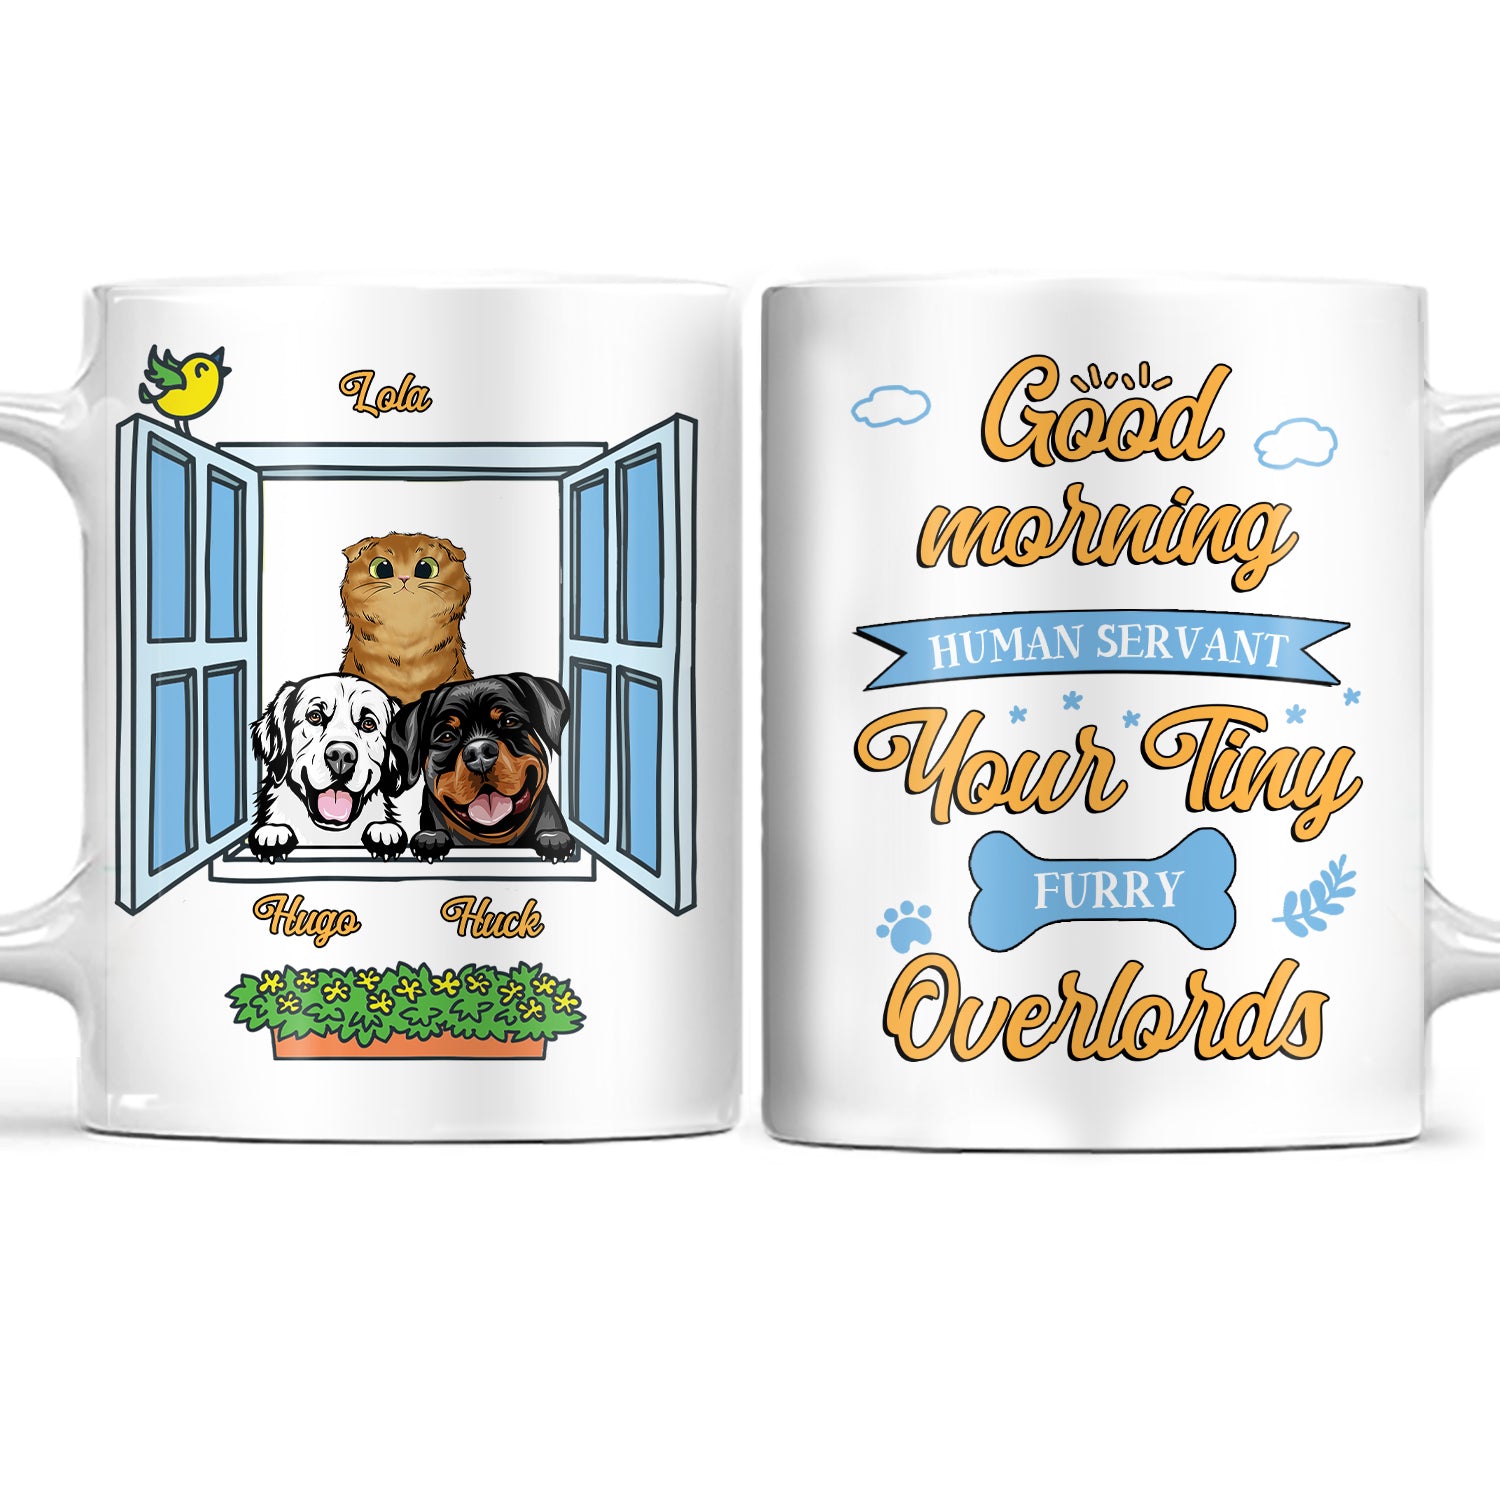 Good Morning Human Servant - Gift For Pet Lover - Personalized Custom White Edge-to-Edge Mug